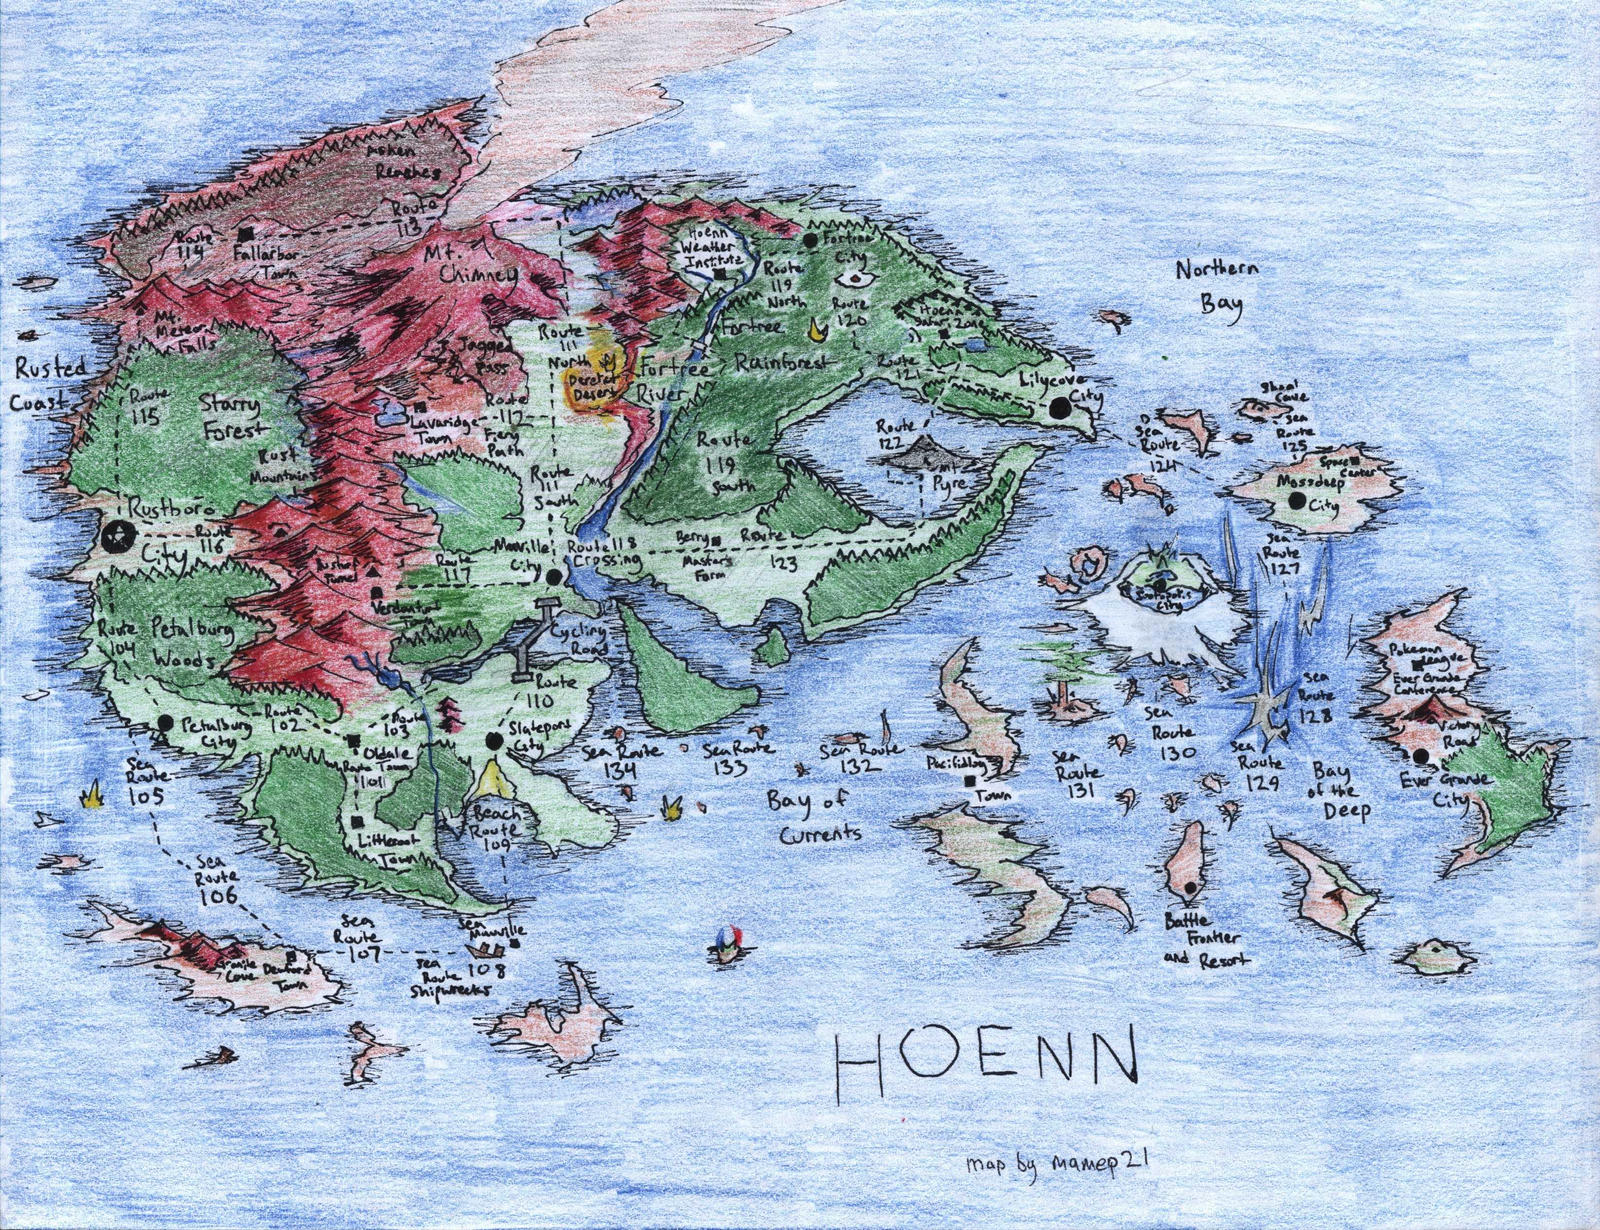 Region of Hoenn